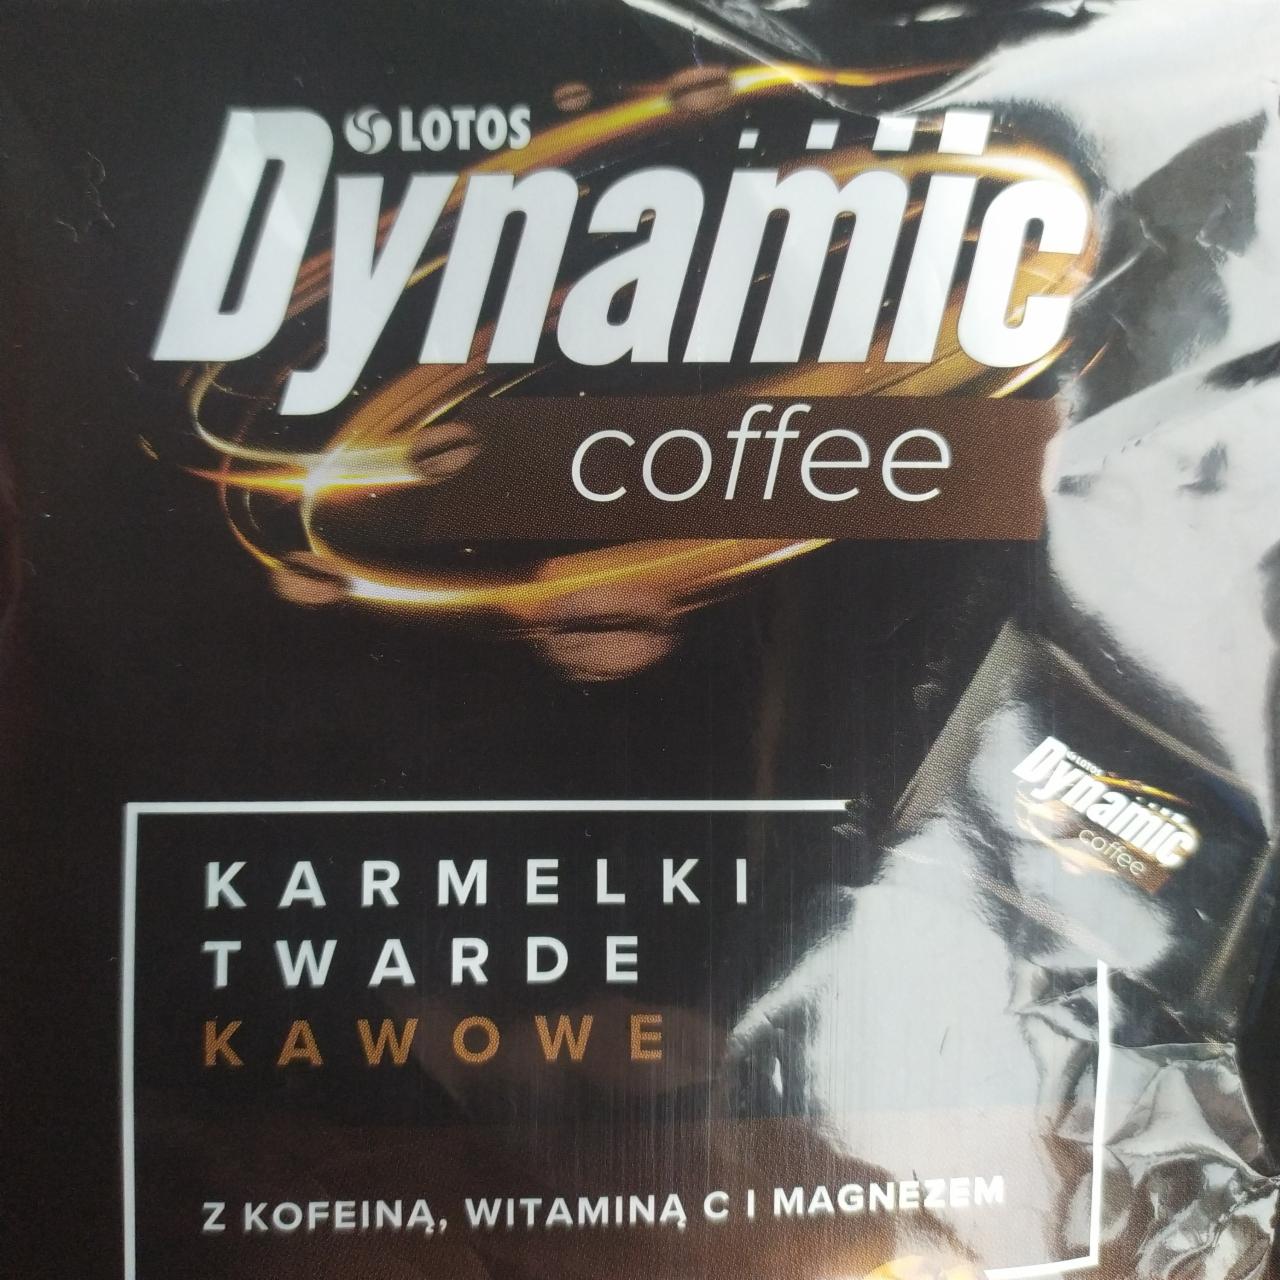 Фото - карамельки кофейные Karmelki z kofeiną, witaminą c i magnezem Dynamic coffee Lotos